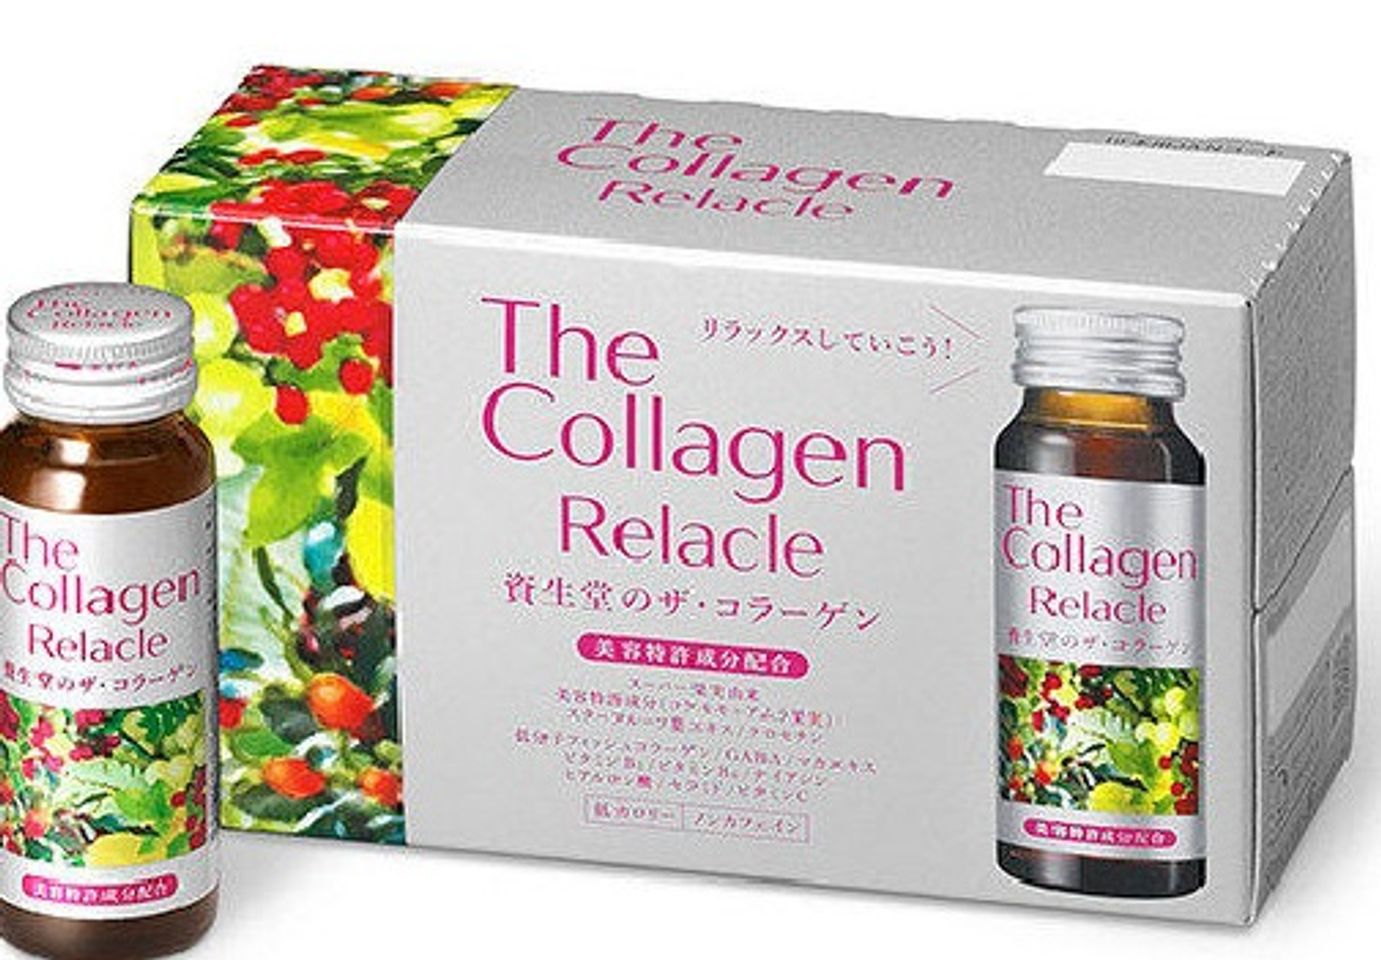 The Collagen Relacle Shiseido Nhật Bản dạng nước 1